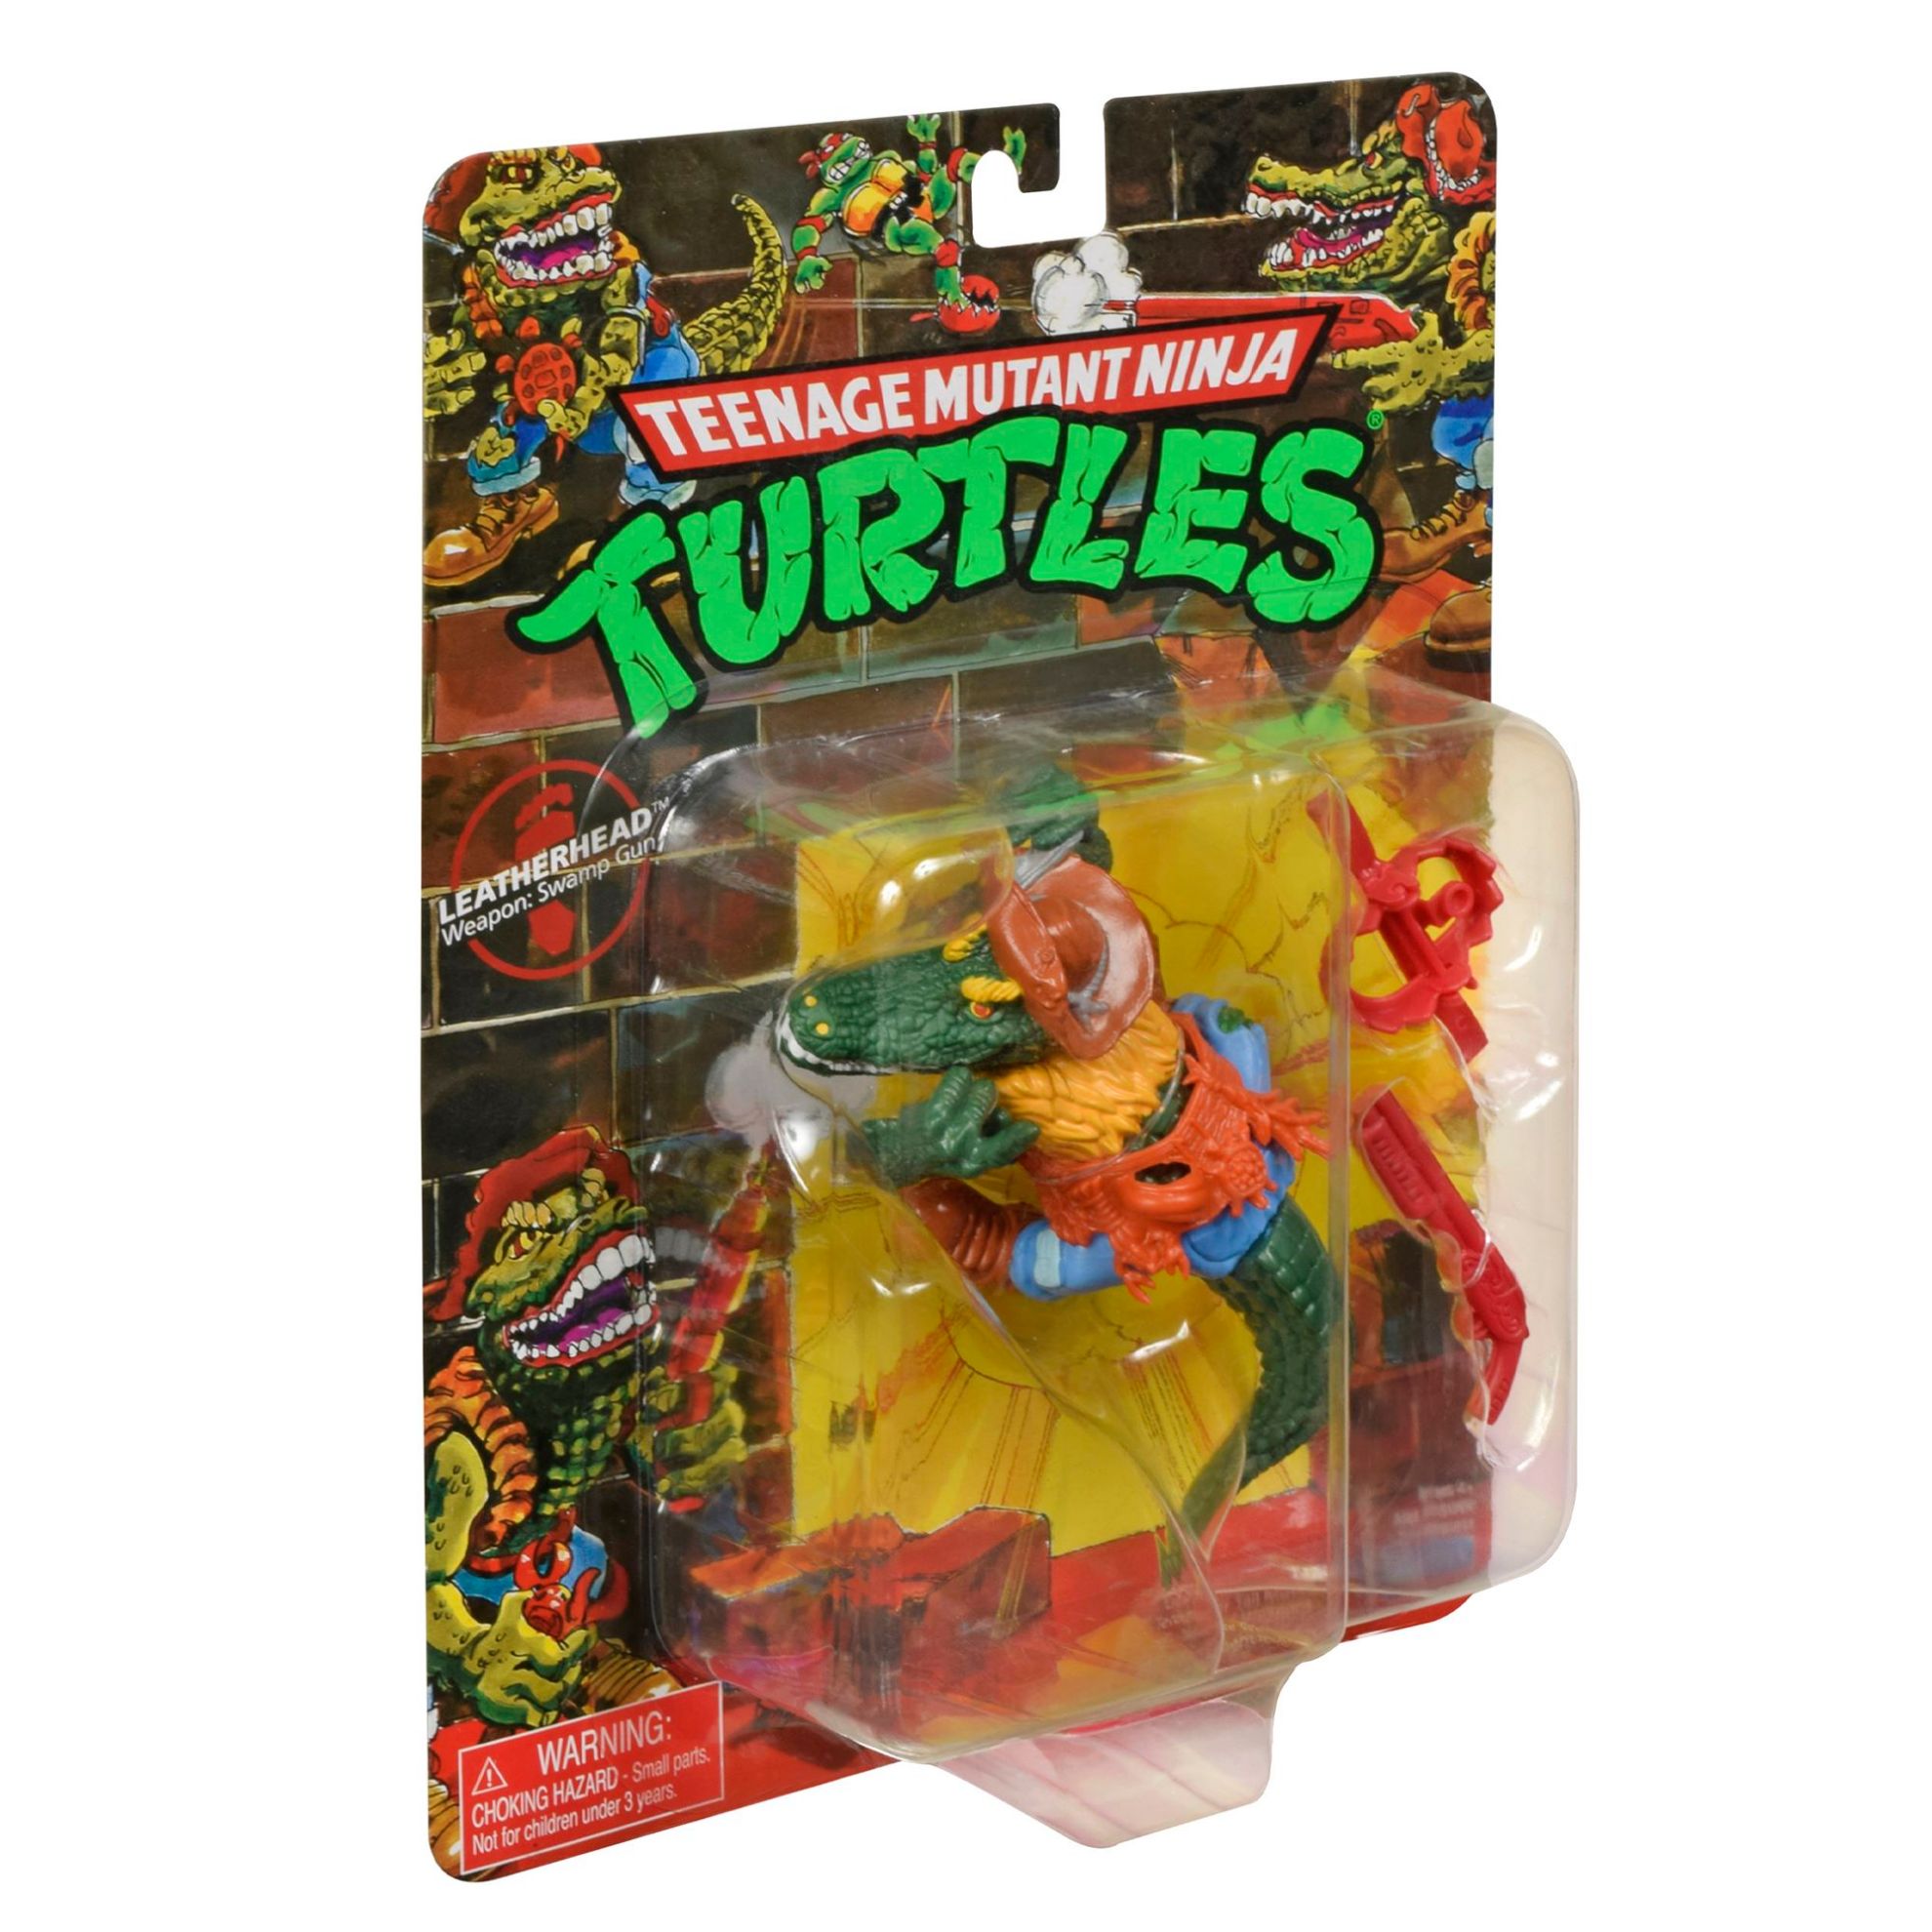 Teenage Mutant Ninja Turtles Classic Mutant Figures - Leatherhead